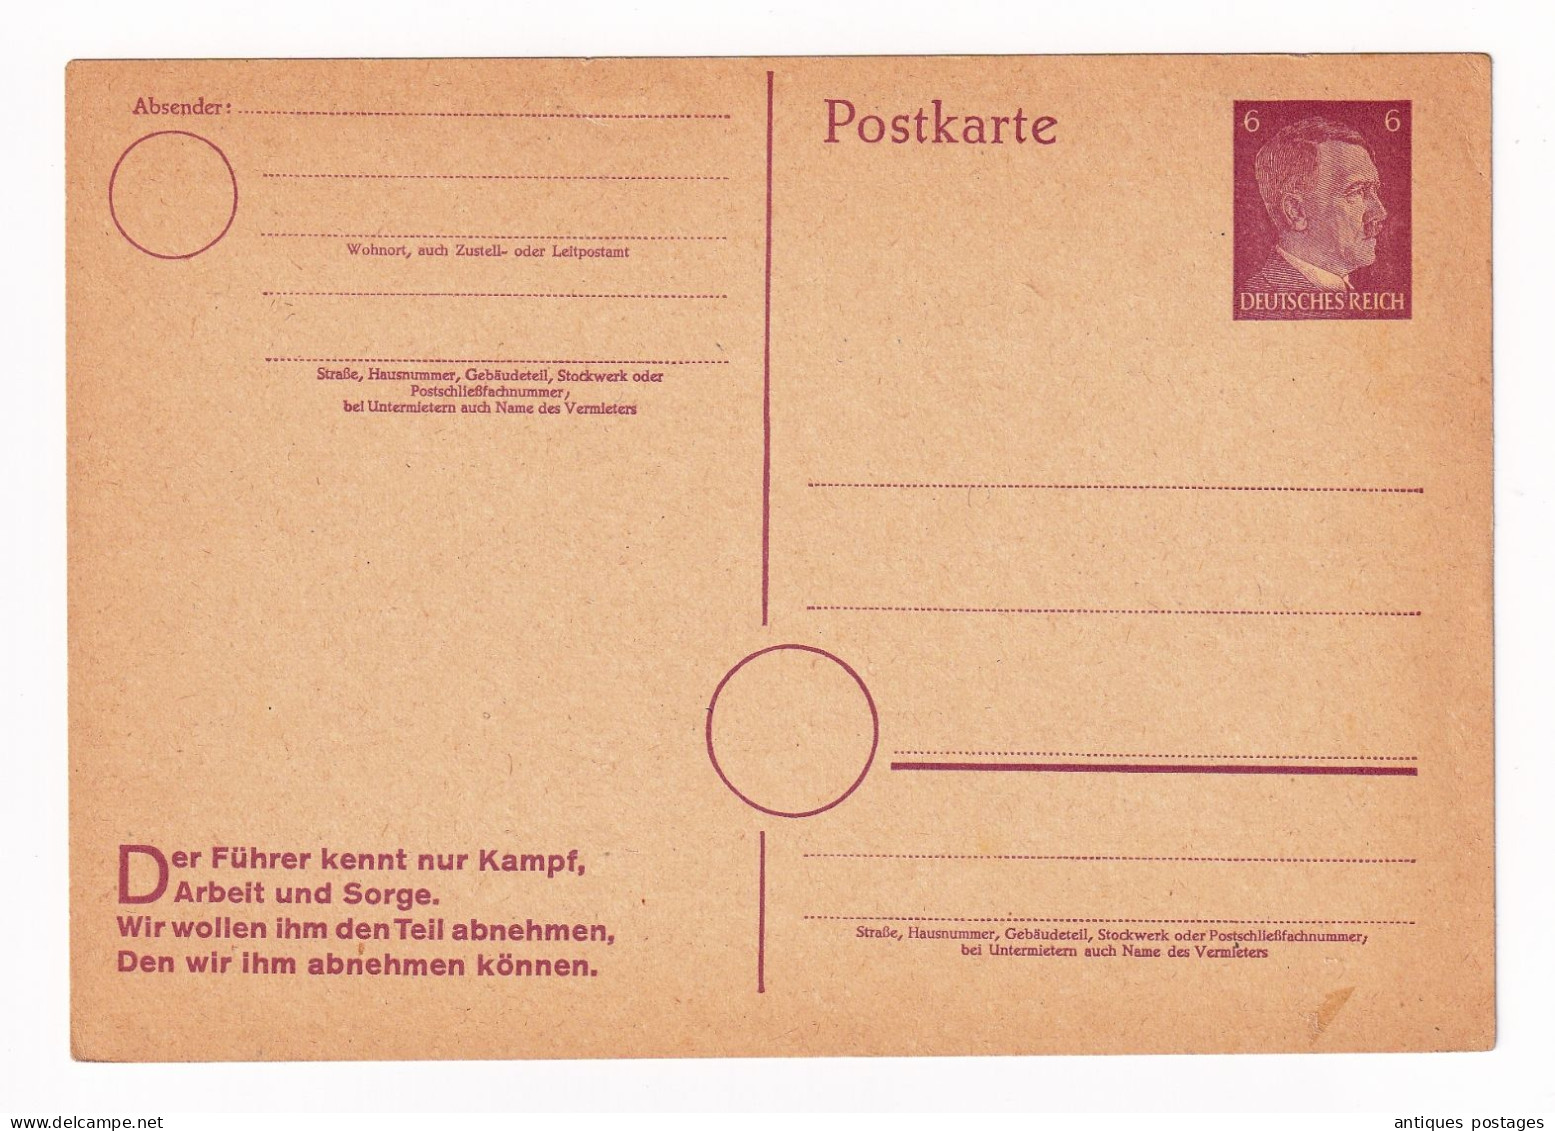 Postkarte Adolf Hitler Allemagne Deutschland Entier Postal Deutsches Reich - Postcards